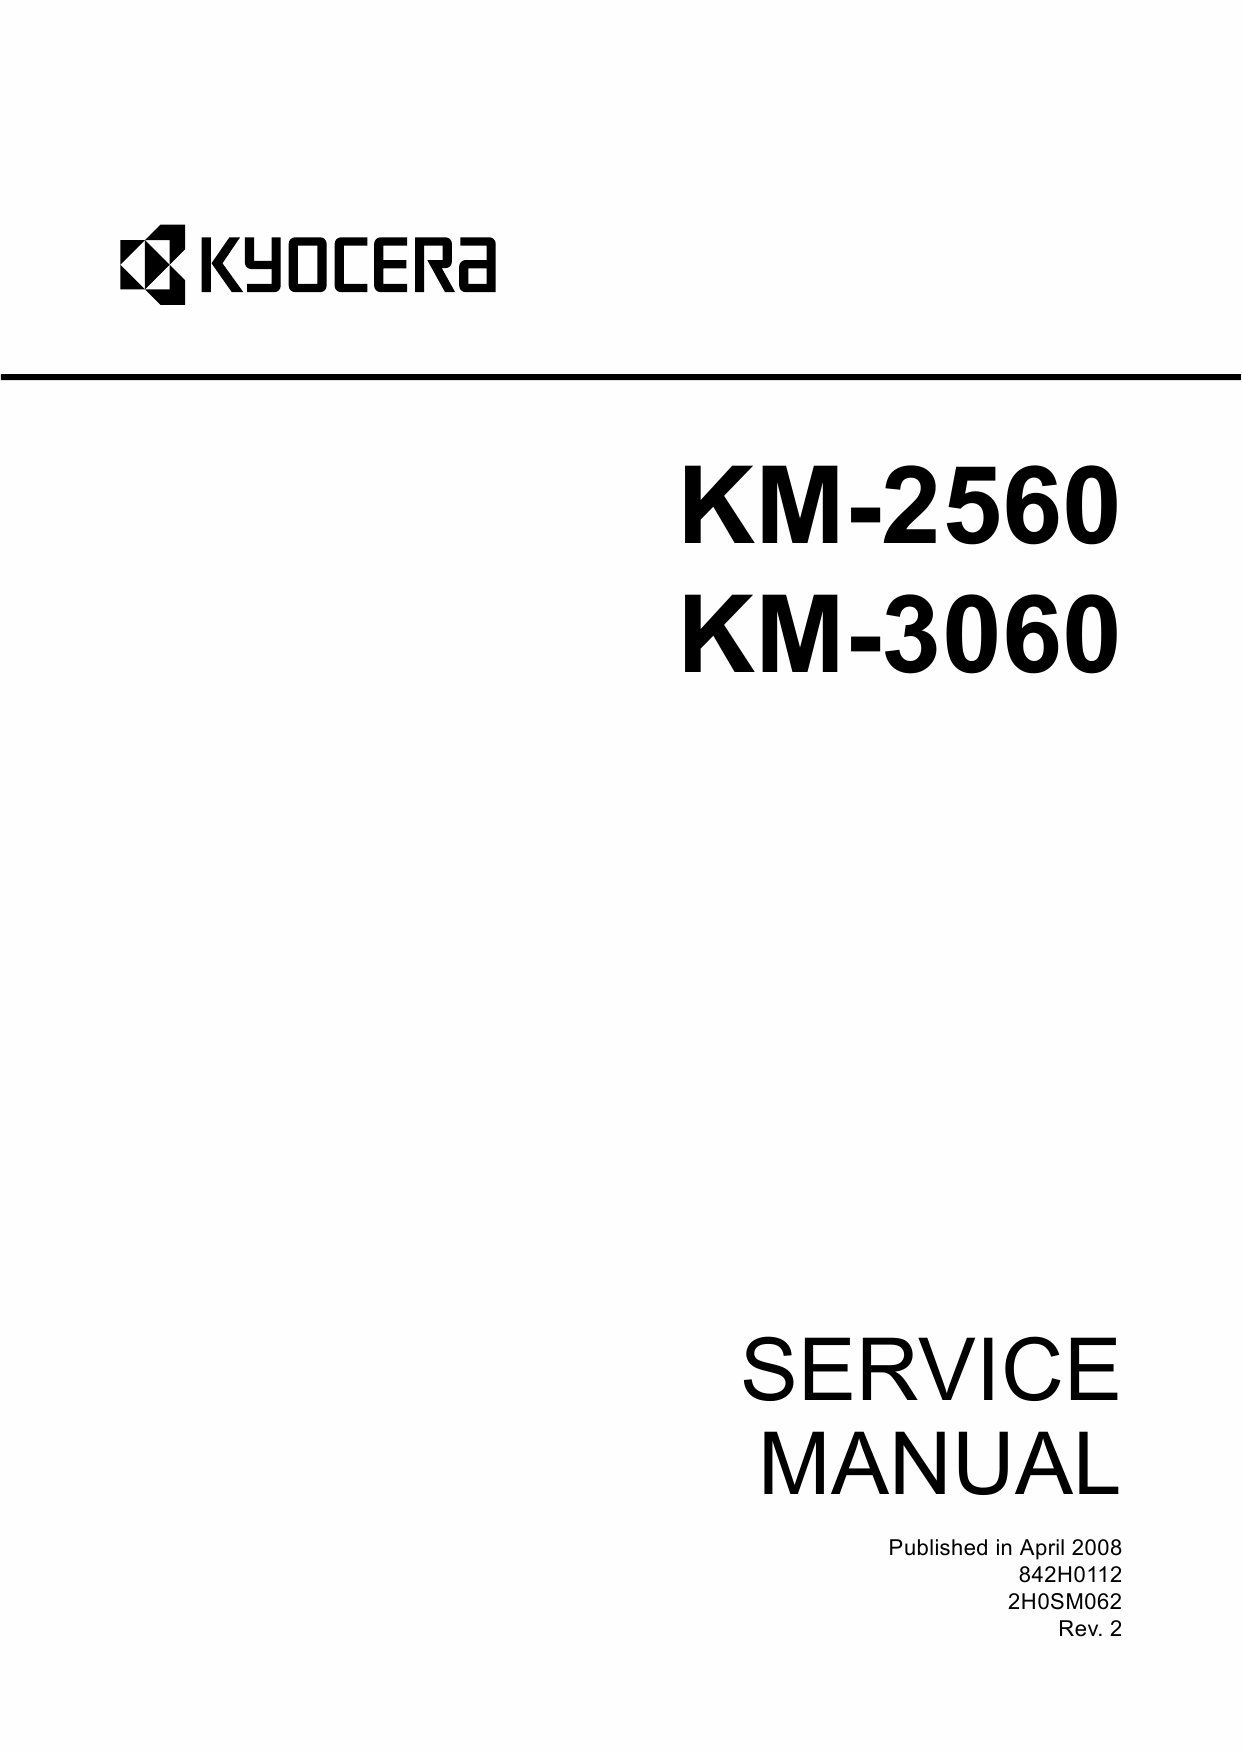 KYOCERA Copier KM-2560 3060 Service Manual-1